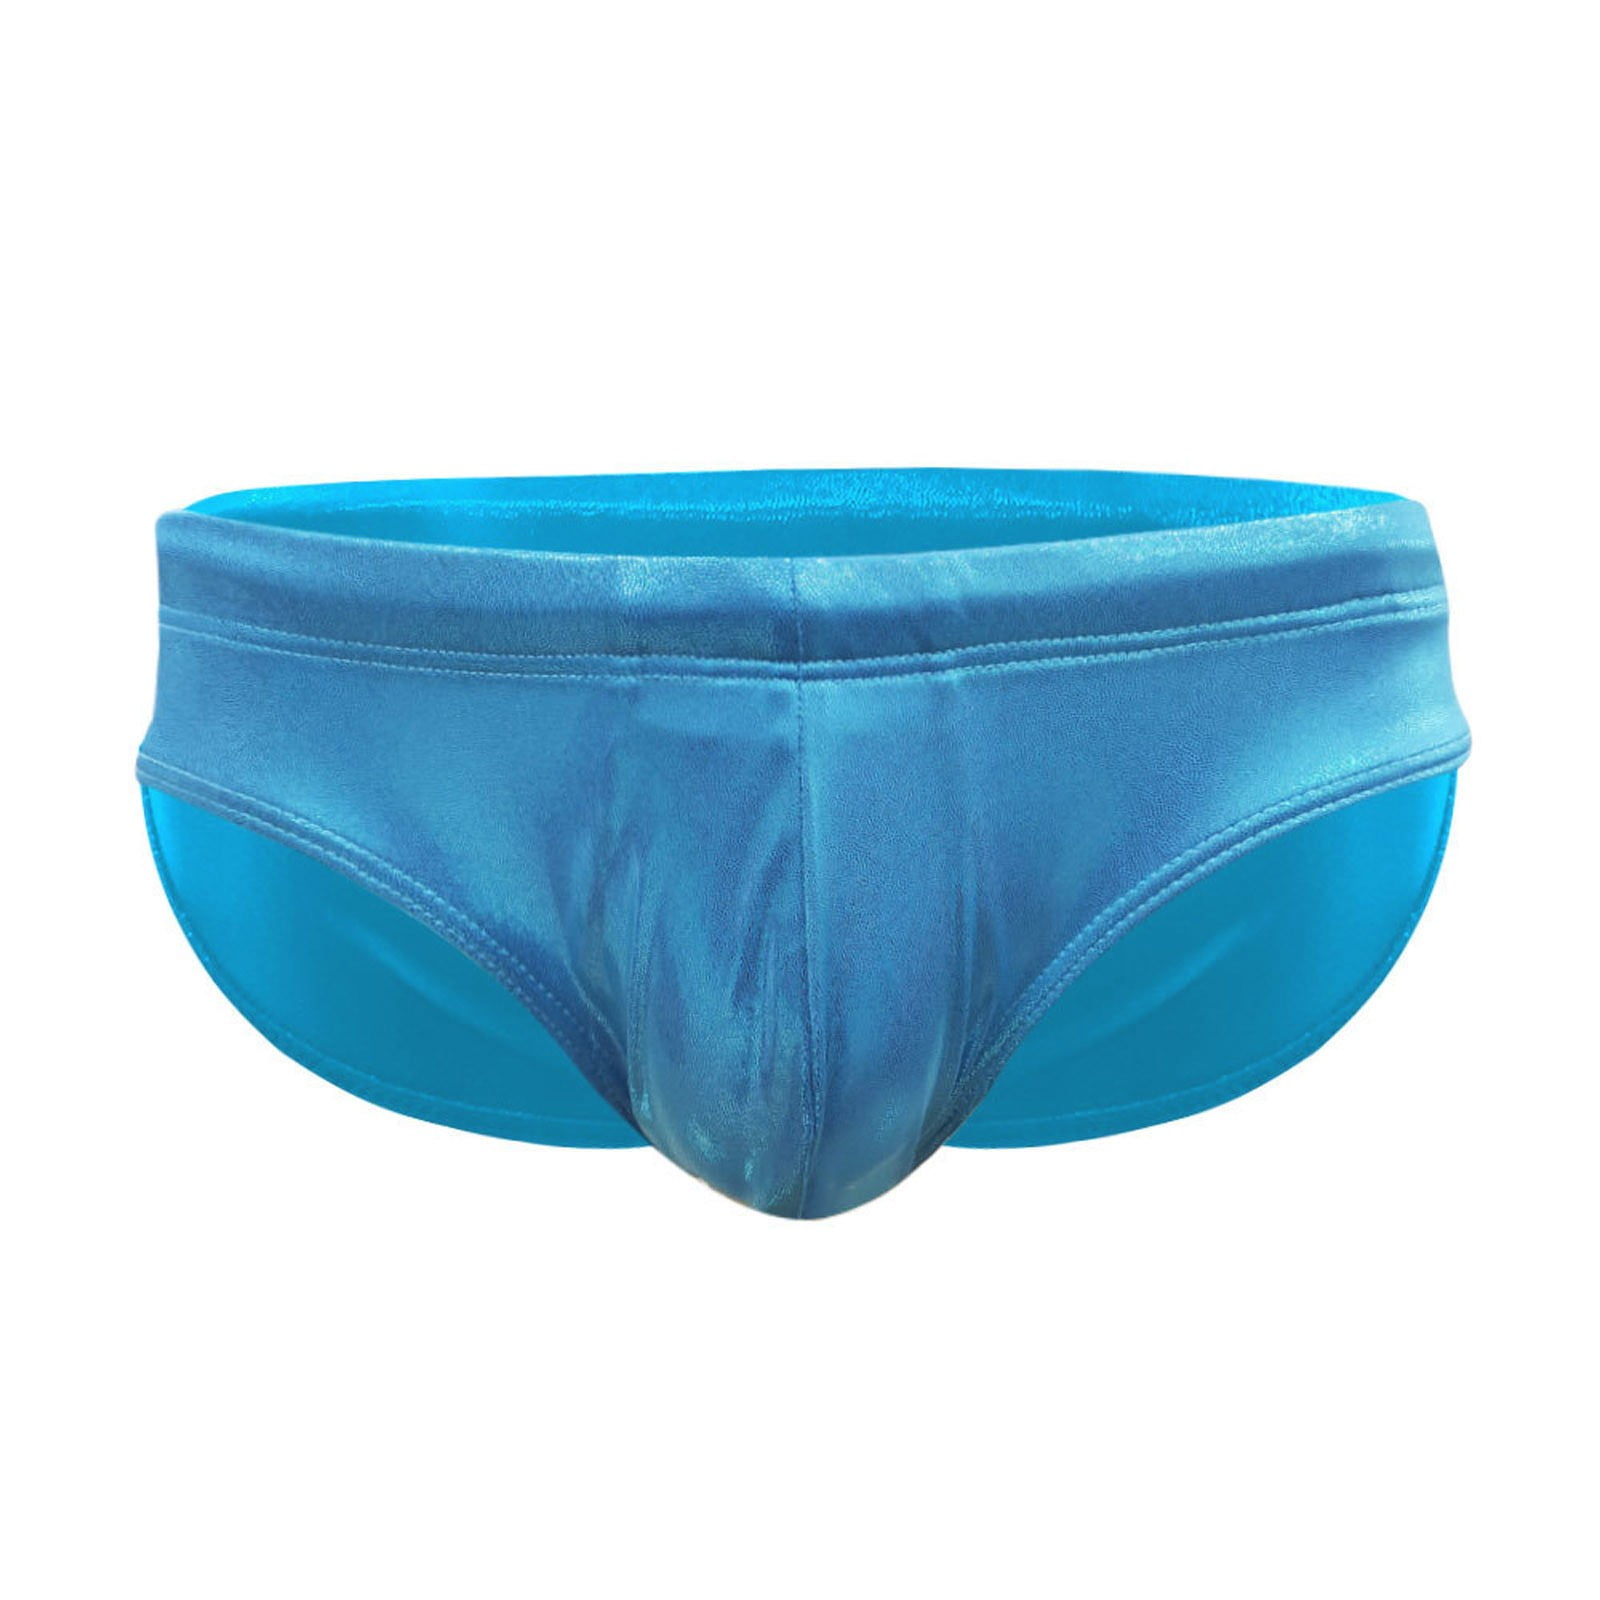 Pimfylm Men'S Underwear Briefs Mens Bikini Swimwear Low Rise Swim ...